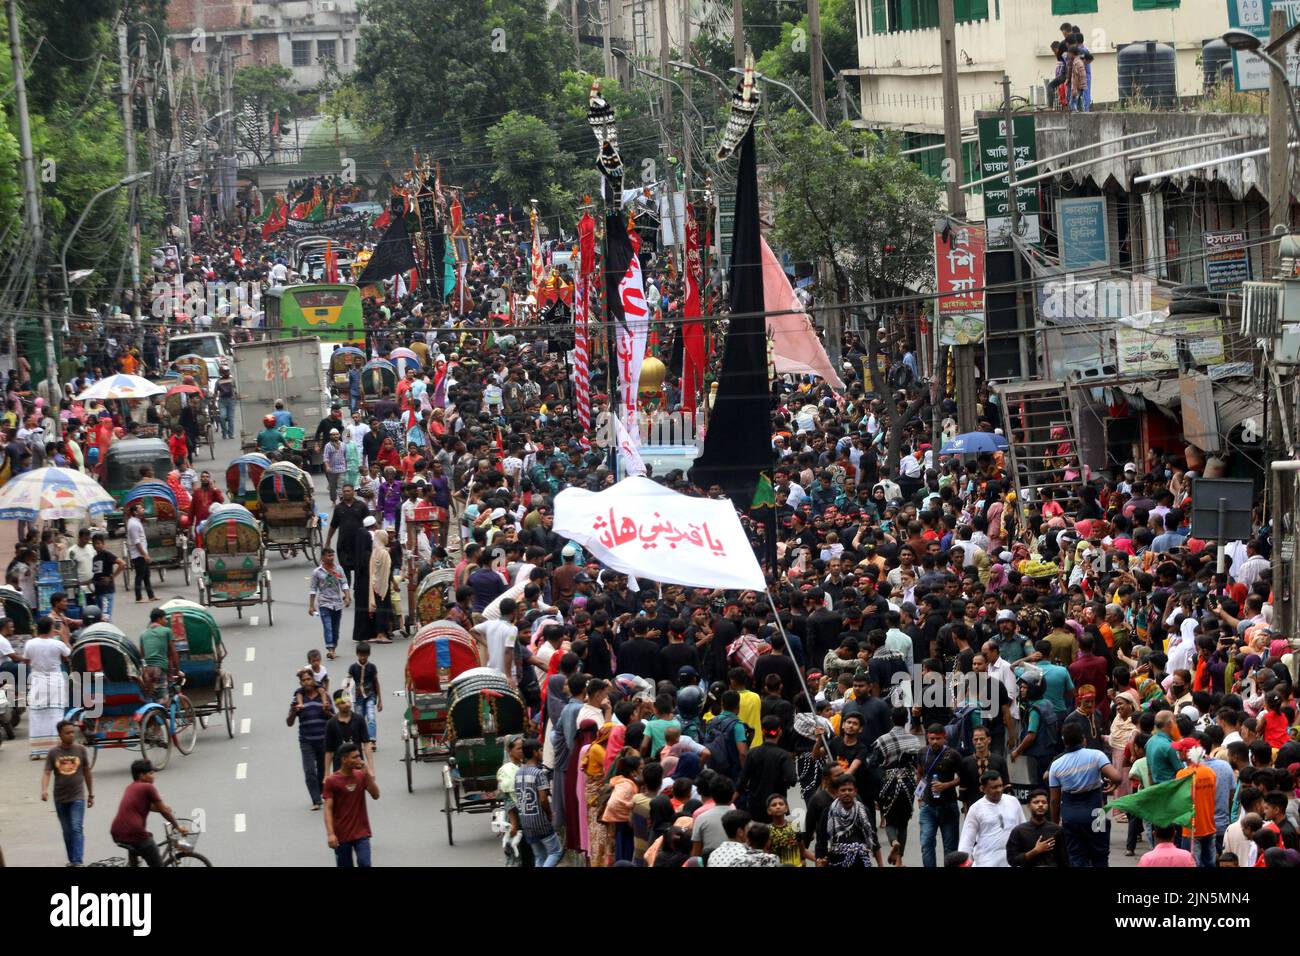 Miles de personas de la comunidad chiíta de Bangladesh han participado en las procesiones de Tazia con ocasión de la santa Ashura, Bajo estricta seguridad.Se vio a devotos reunirse en los locales de Hussaini Dalan en Dhaka para conmemorar el día santo.El Presidente Abdul Hamid y la Primera Ministra Sheikh Hasina han emitido mensajes separados para los ciudadanos en esta ocasión. En este día del año Hijri de 61, Hazrat Imam Hussain, nieto del profeta Hazrat Muhammad (PBUH), junto con sus familiares y 72 seguidores, abrazaron el martirio en manos de los soldados de Yazid en Karbala maidan, en Irak Foto de stock